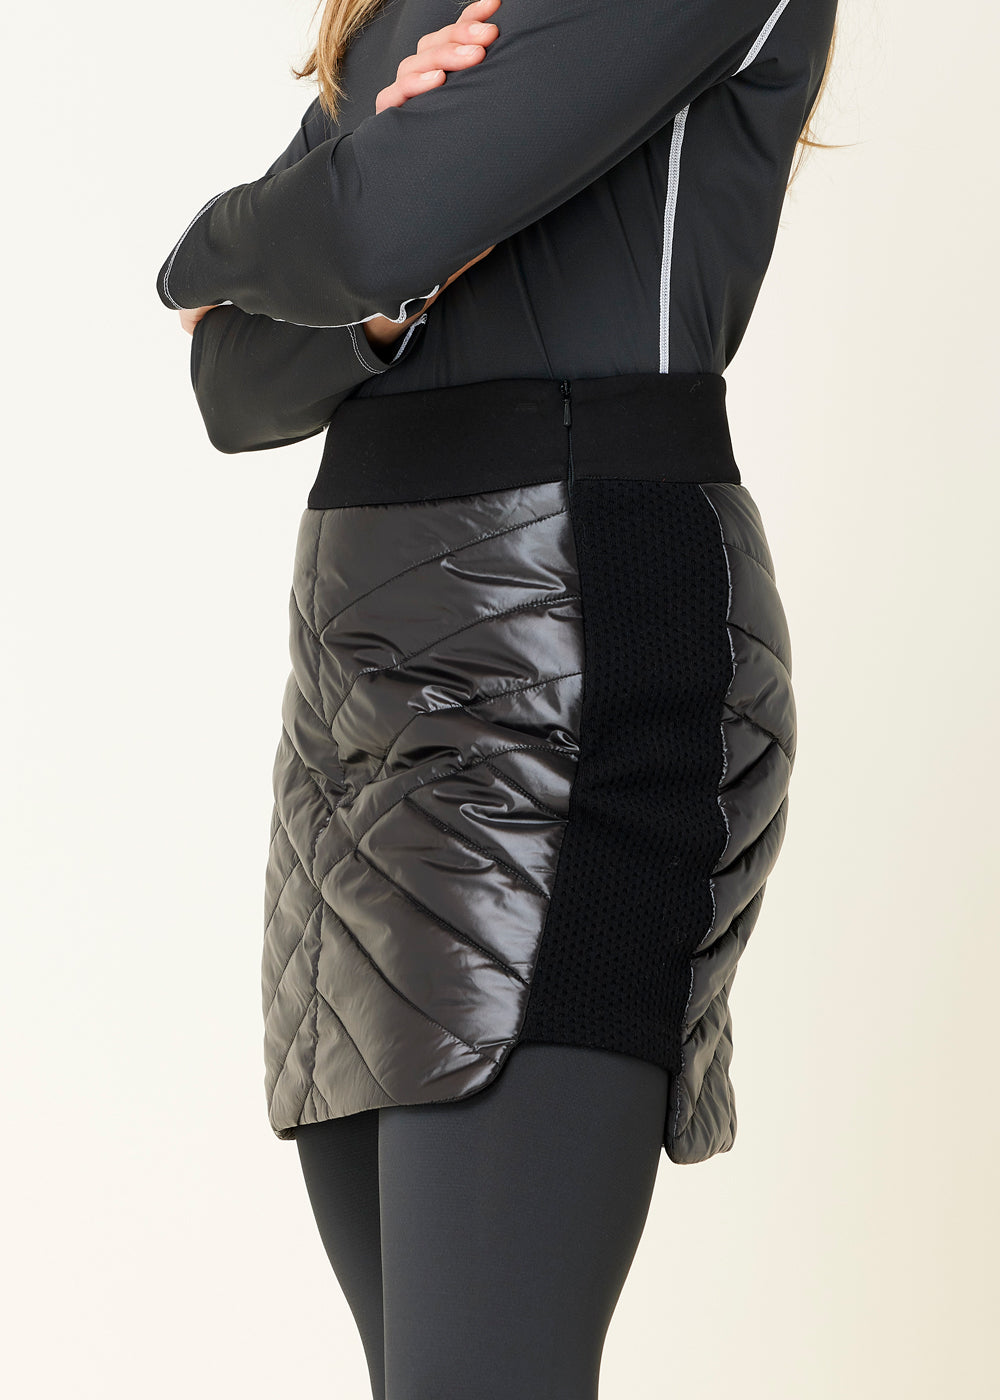 Krimson Klover Carving Skirt - Women's